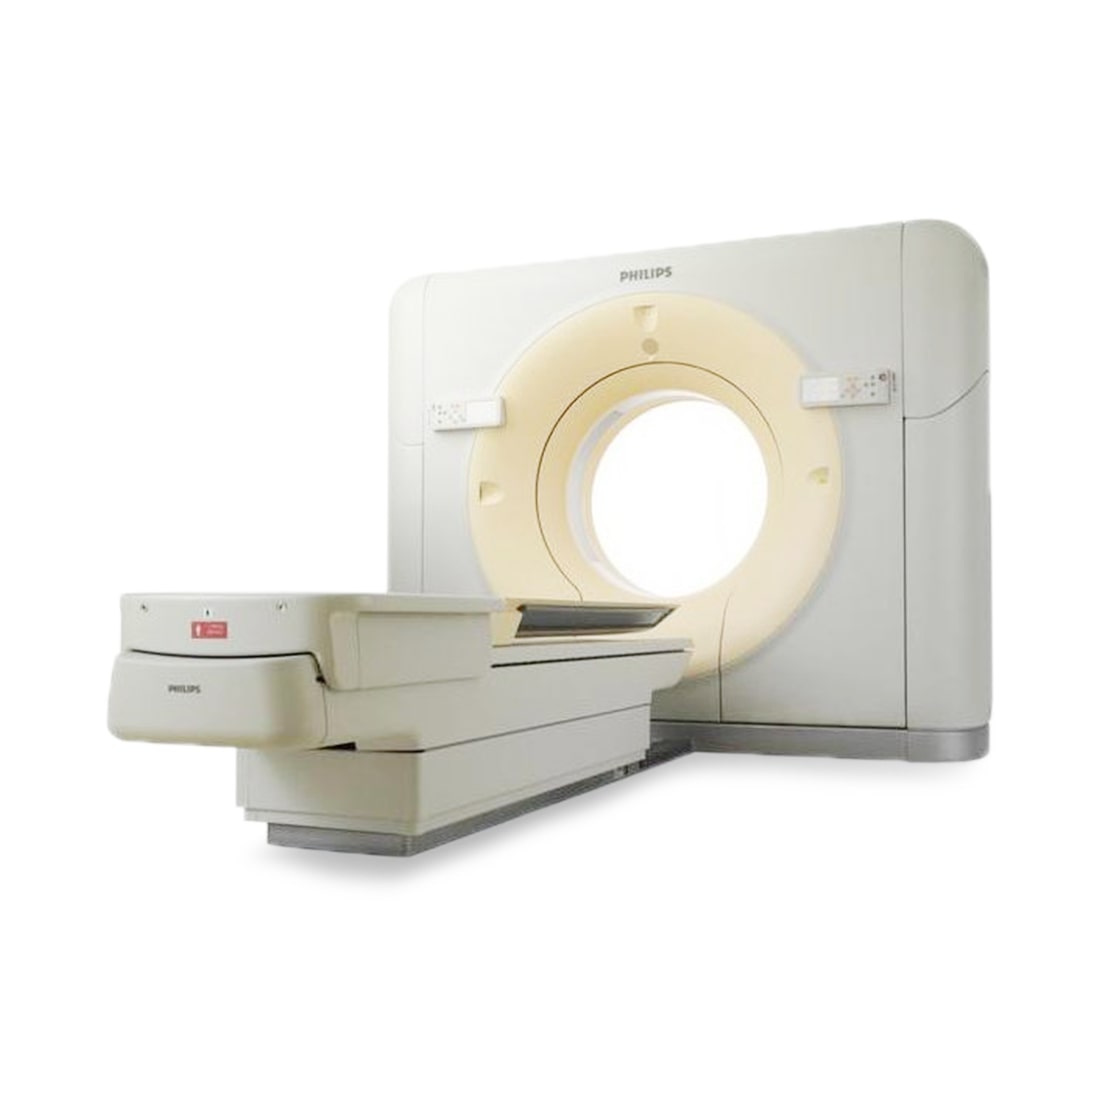 Philips Brilliance 40 Slice CT Scanner